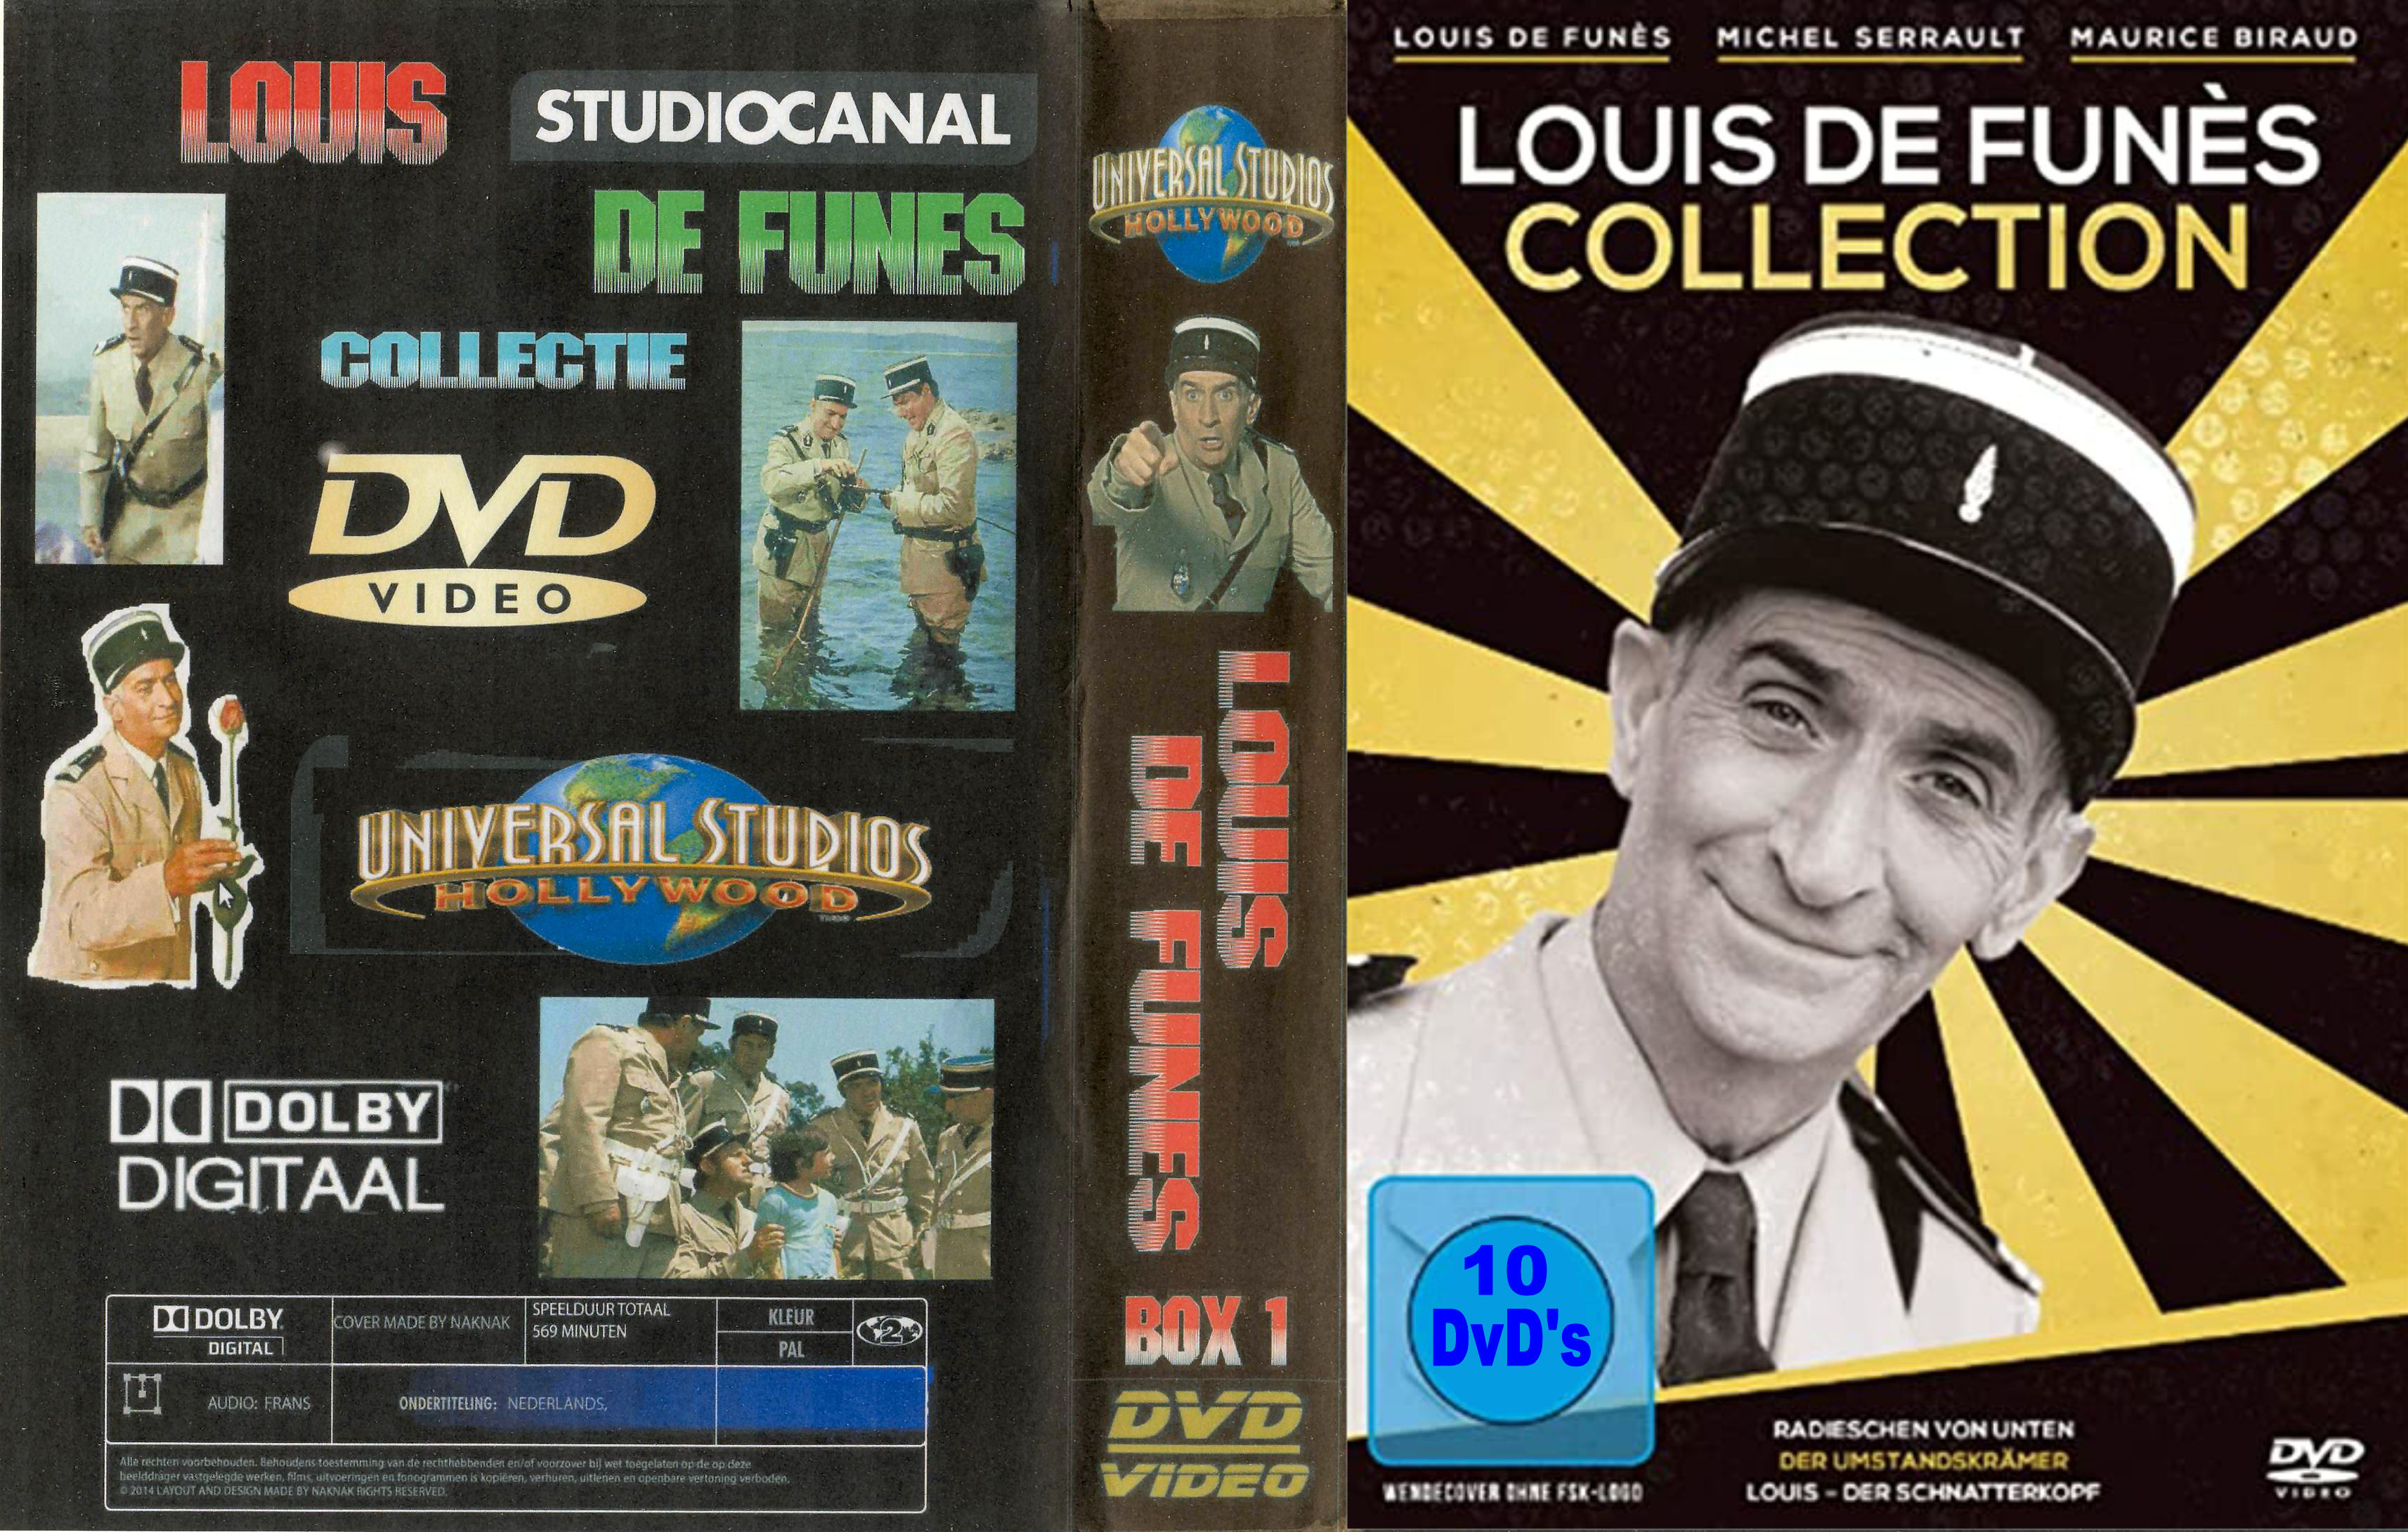 Louis de Funes Collectie ( 30 DvD's ) - DvD 10